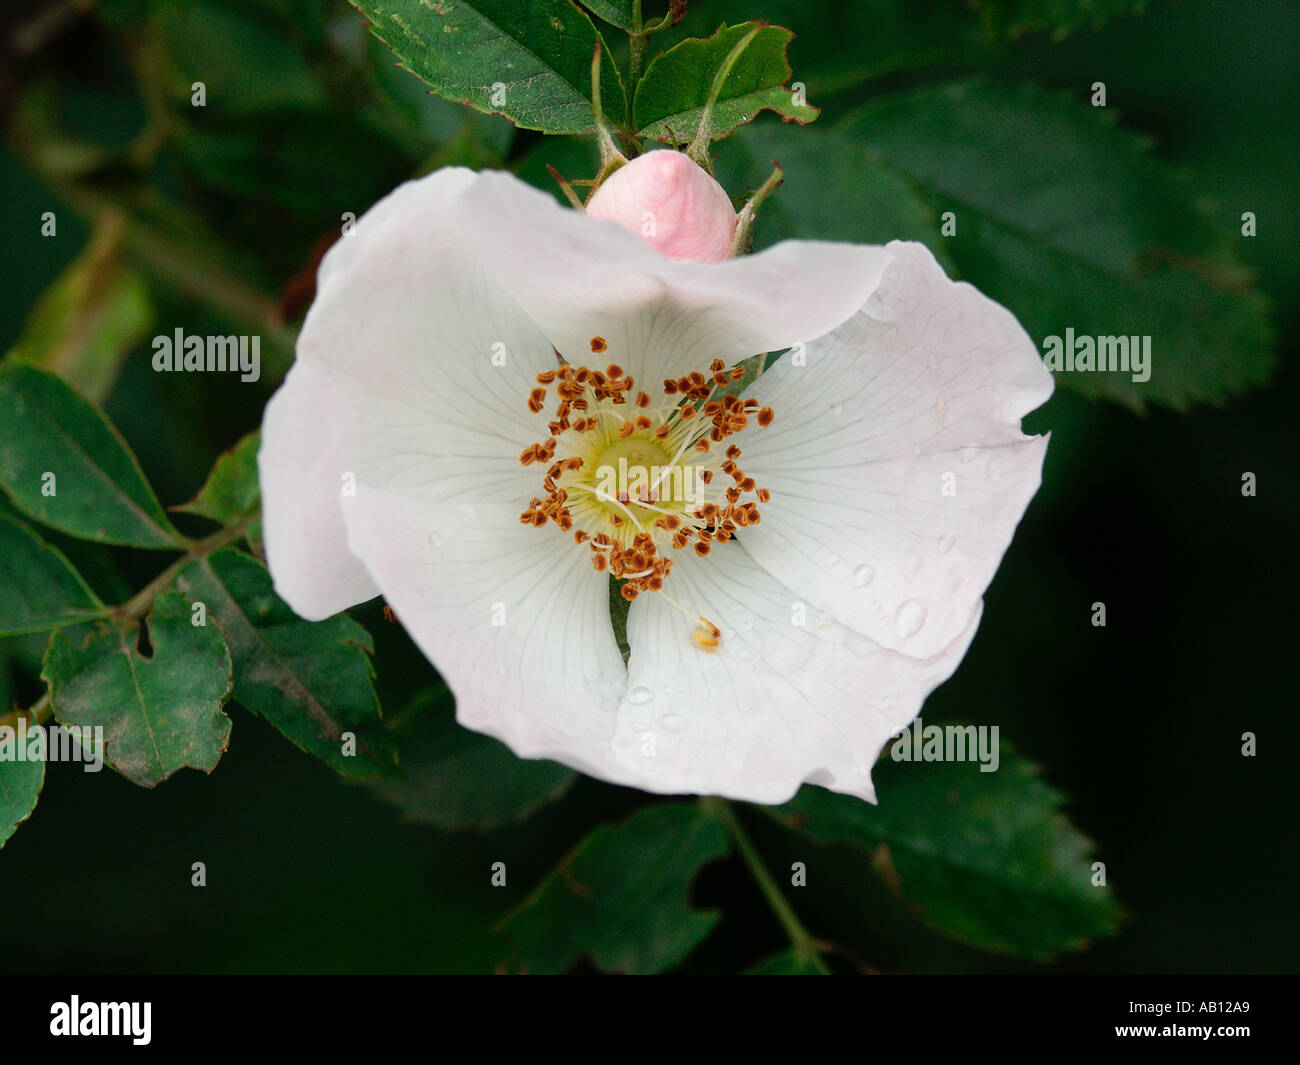 Rosa inglese gran bretagna rosa canina selvaggio fiore bianco piuttosto attraente bloom Inghilterra gran bretagna aroma profumo odore rosa rosac Foto Stock